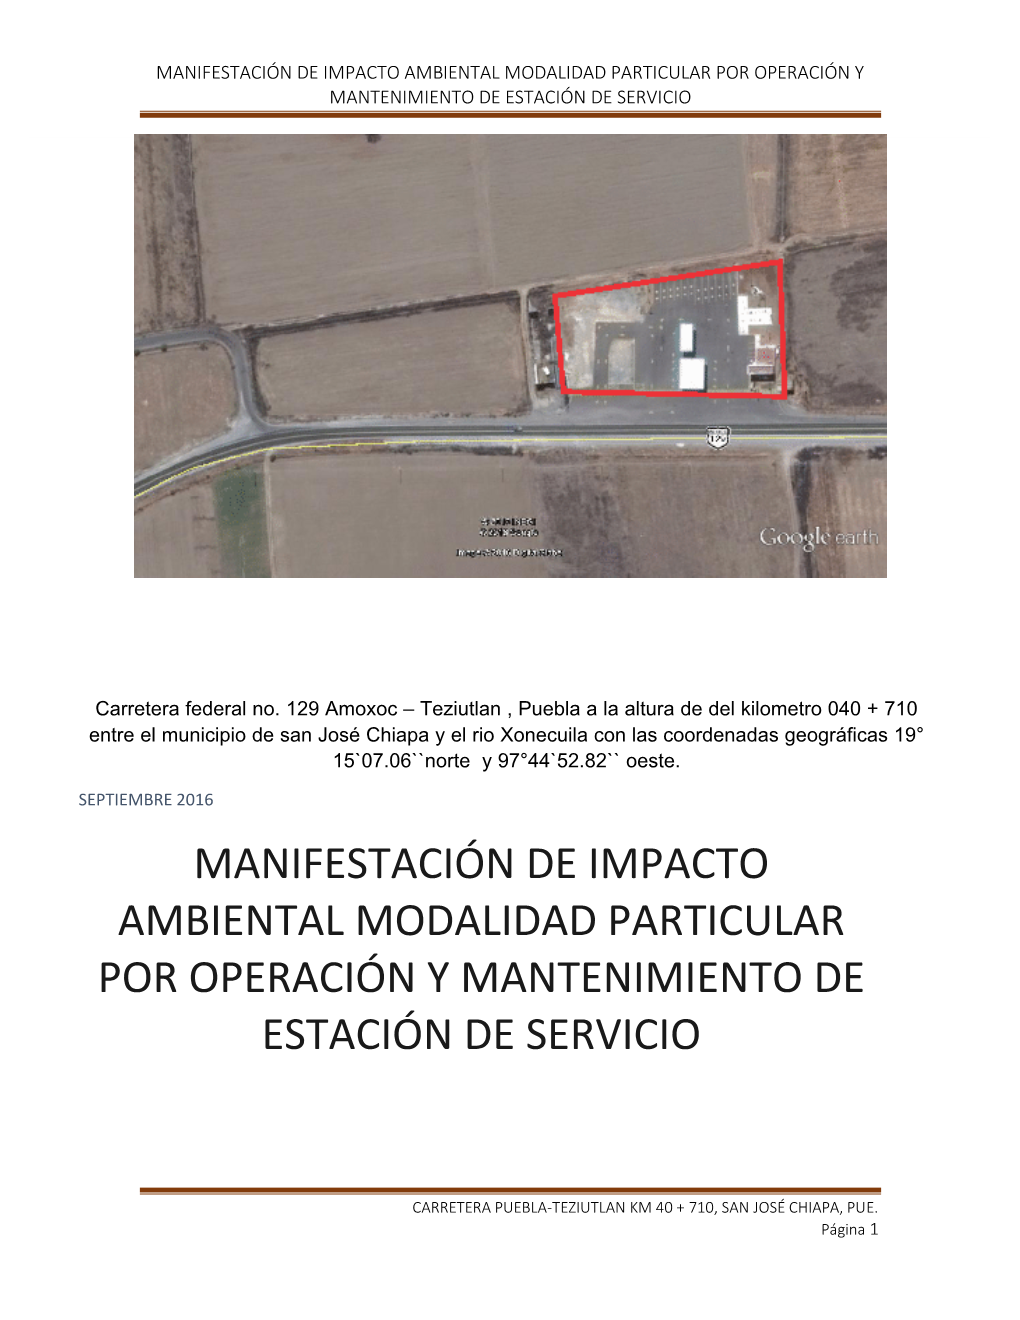 Manifestación De Impacto Ambiental Modalidad Particular Por Operación Y Mantenimiento De Estación De Servicio